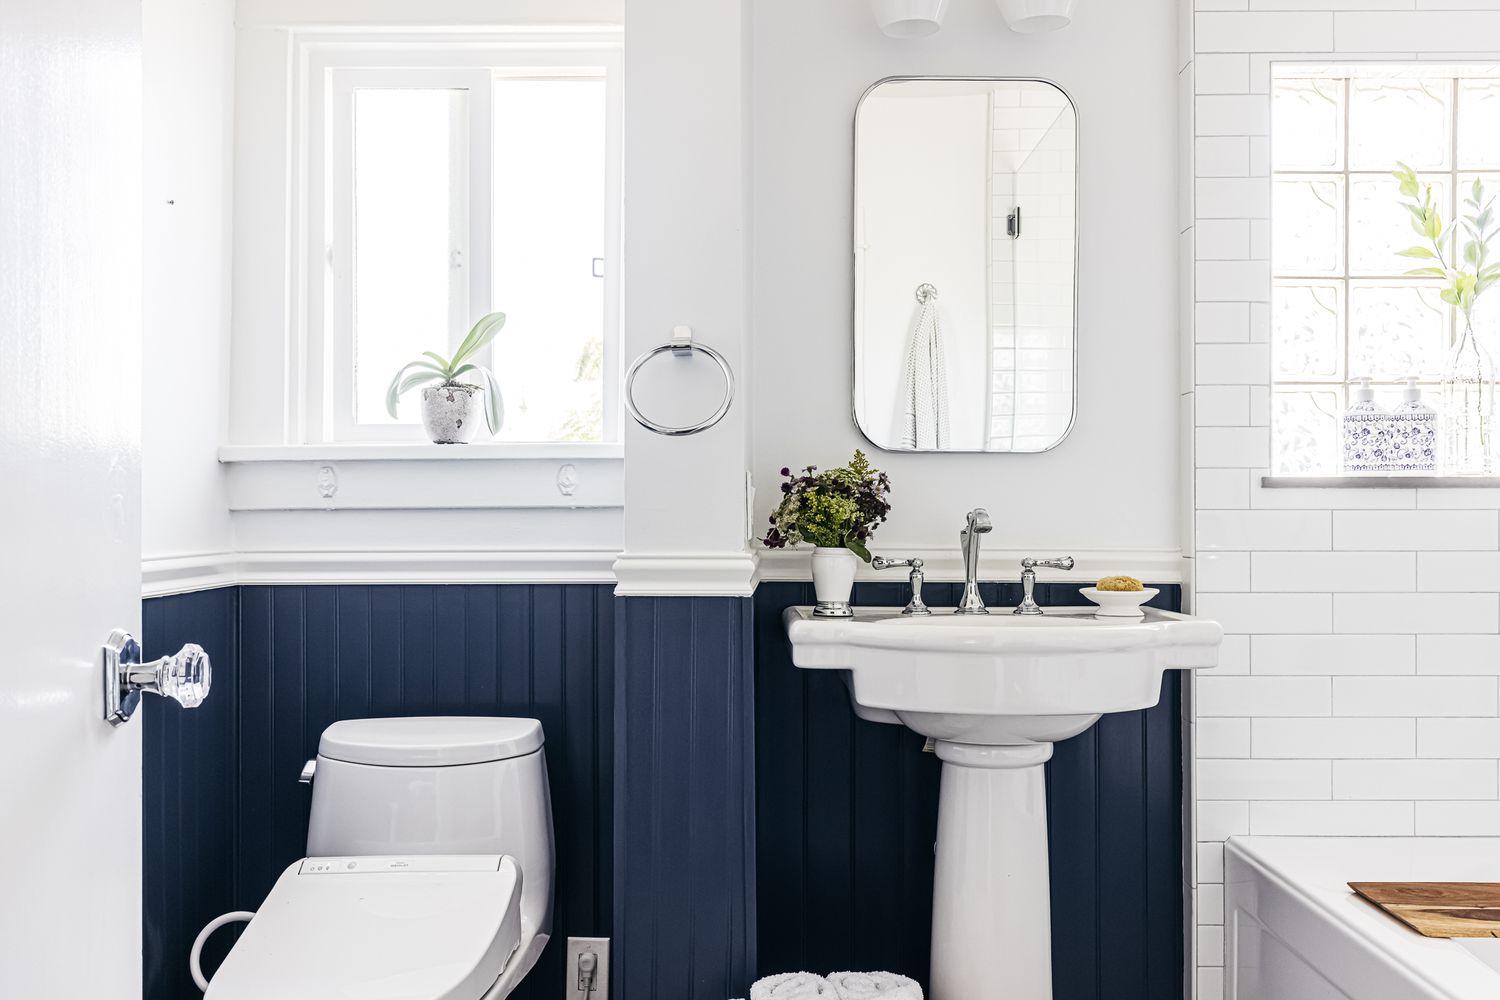 Petite salle de bain aux murs blancs divisés par un traitement en lambris bleu marine